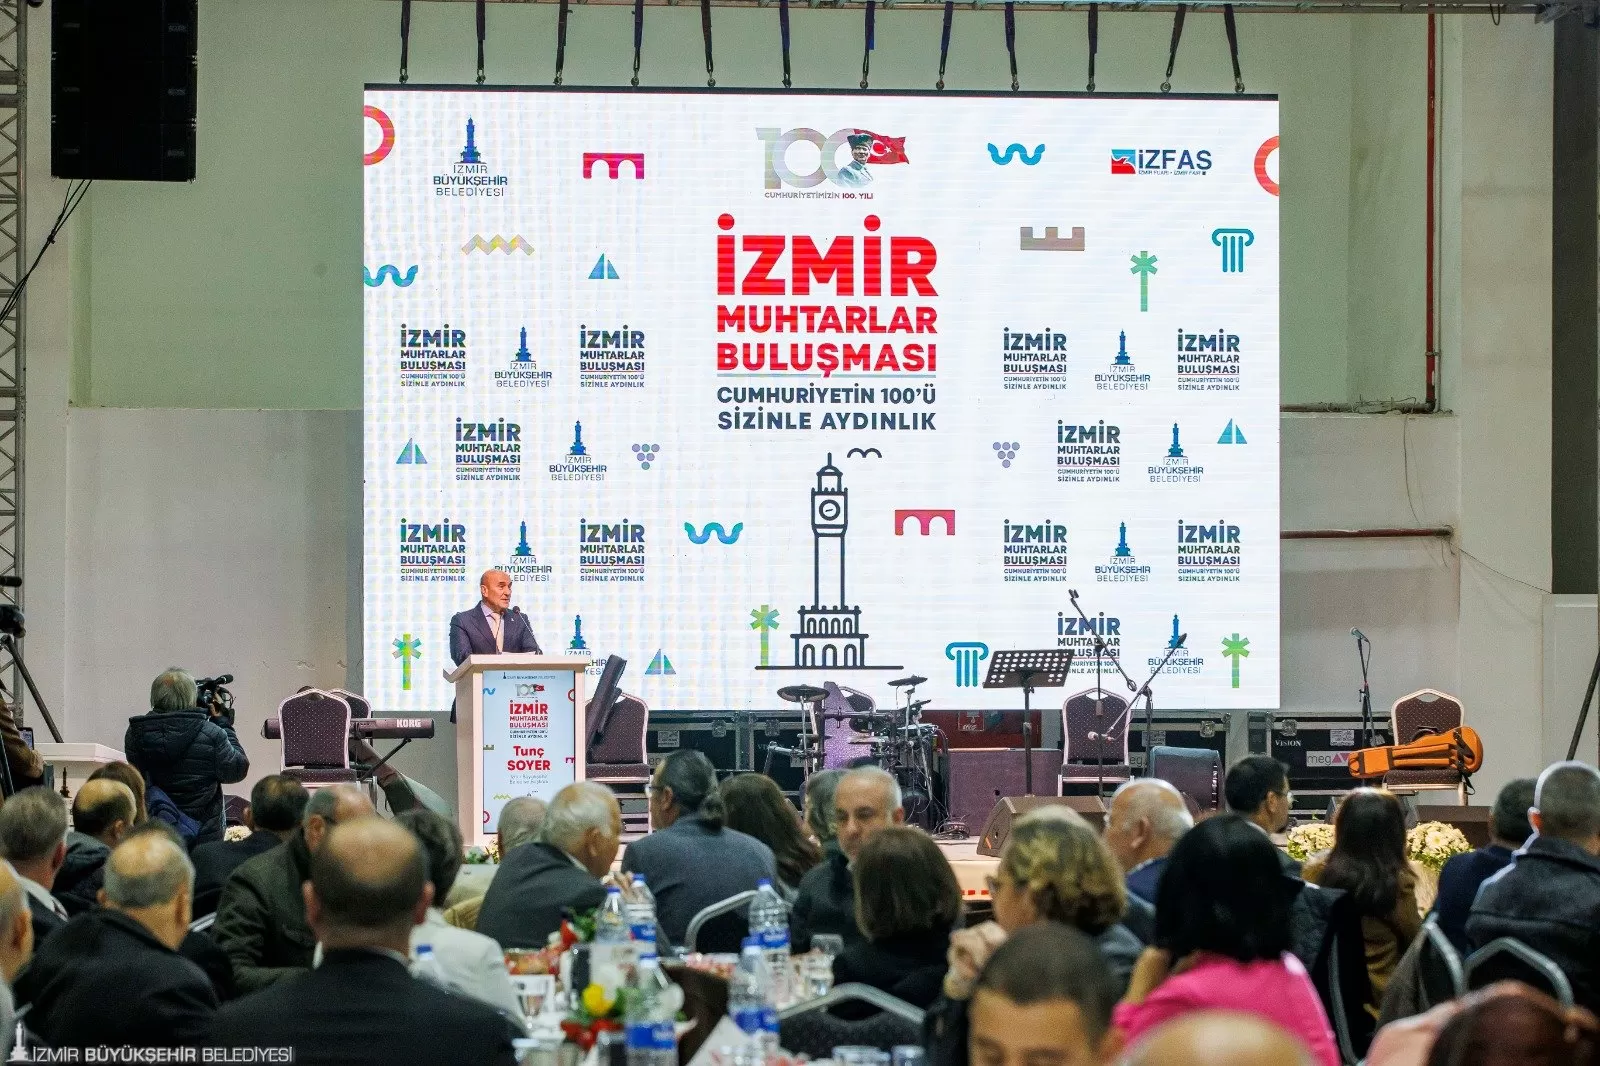 İzmir Büyükşehir Belediyesi tarafından düzenlenen “Fark Yaratan Muhtarlar” etkinliği kapsamında bu yıl dört kategoride toplam 10 muhtar ödüle layık görüldü. 